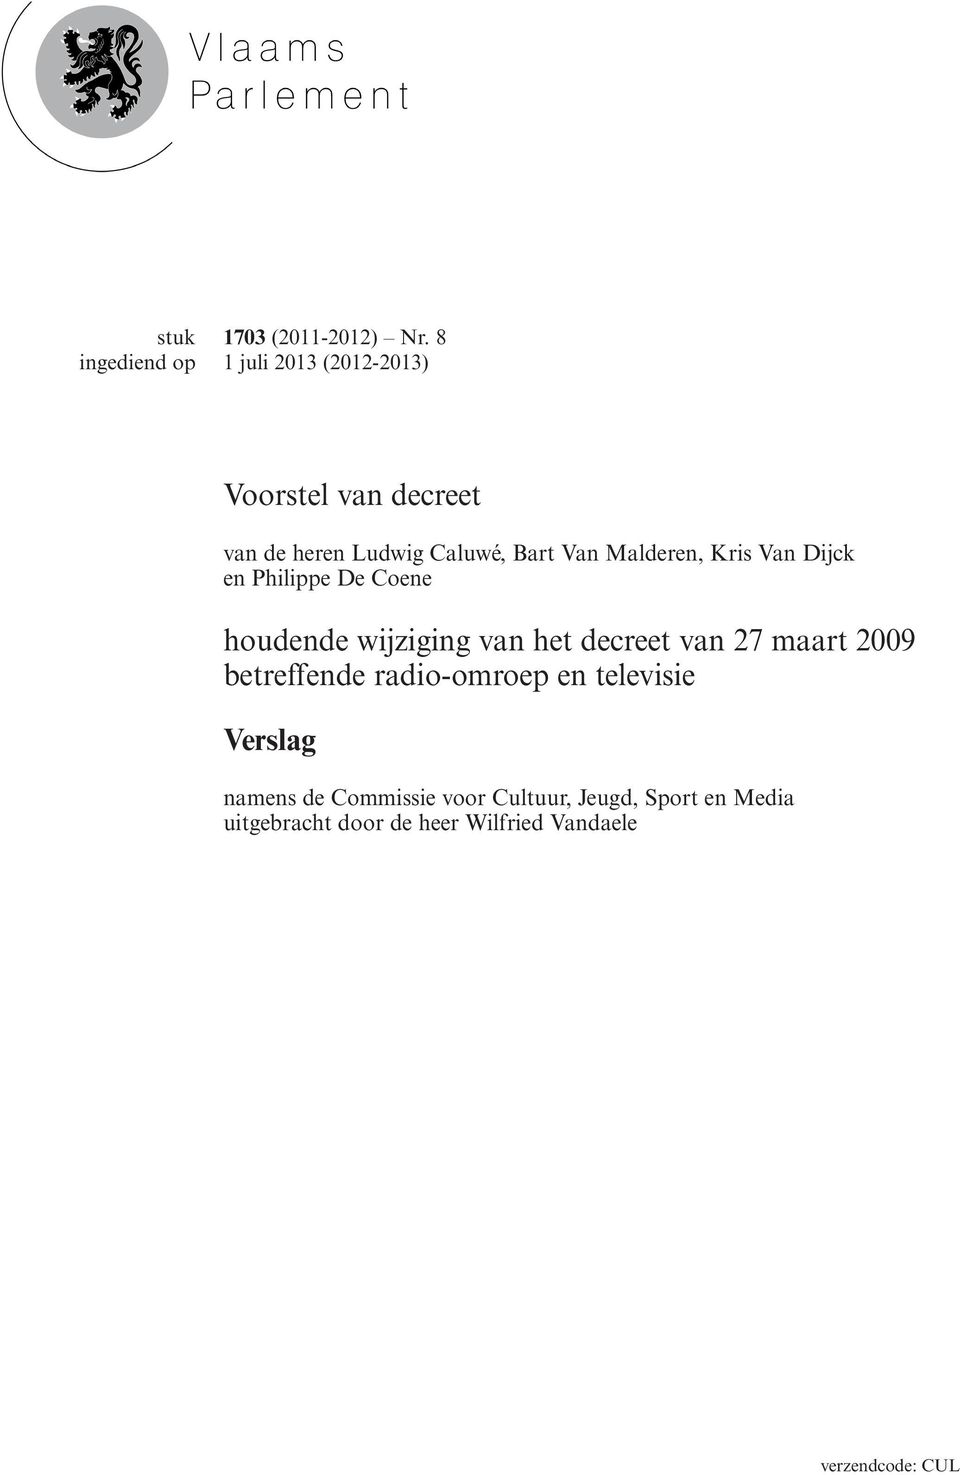 Kris Van Dijck en Philippe De Coene houdende wijziging van het decreet van 27 maart 2009